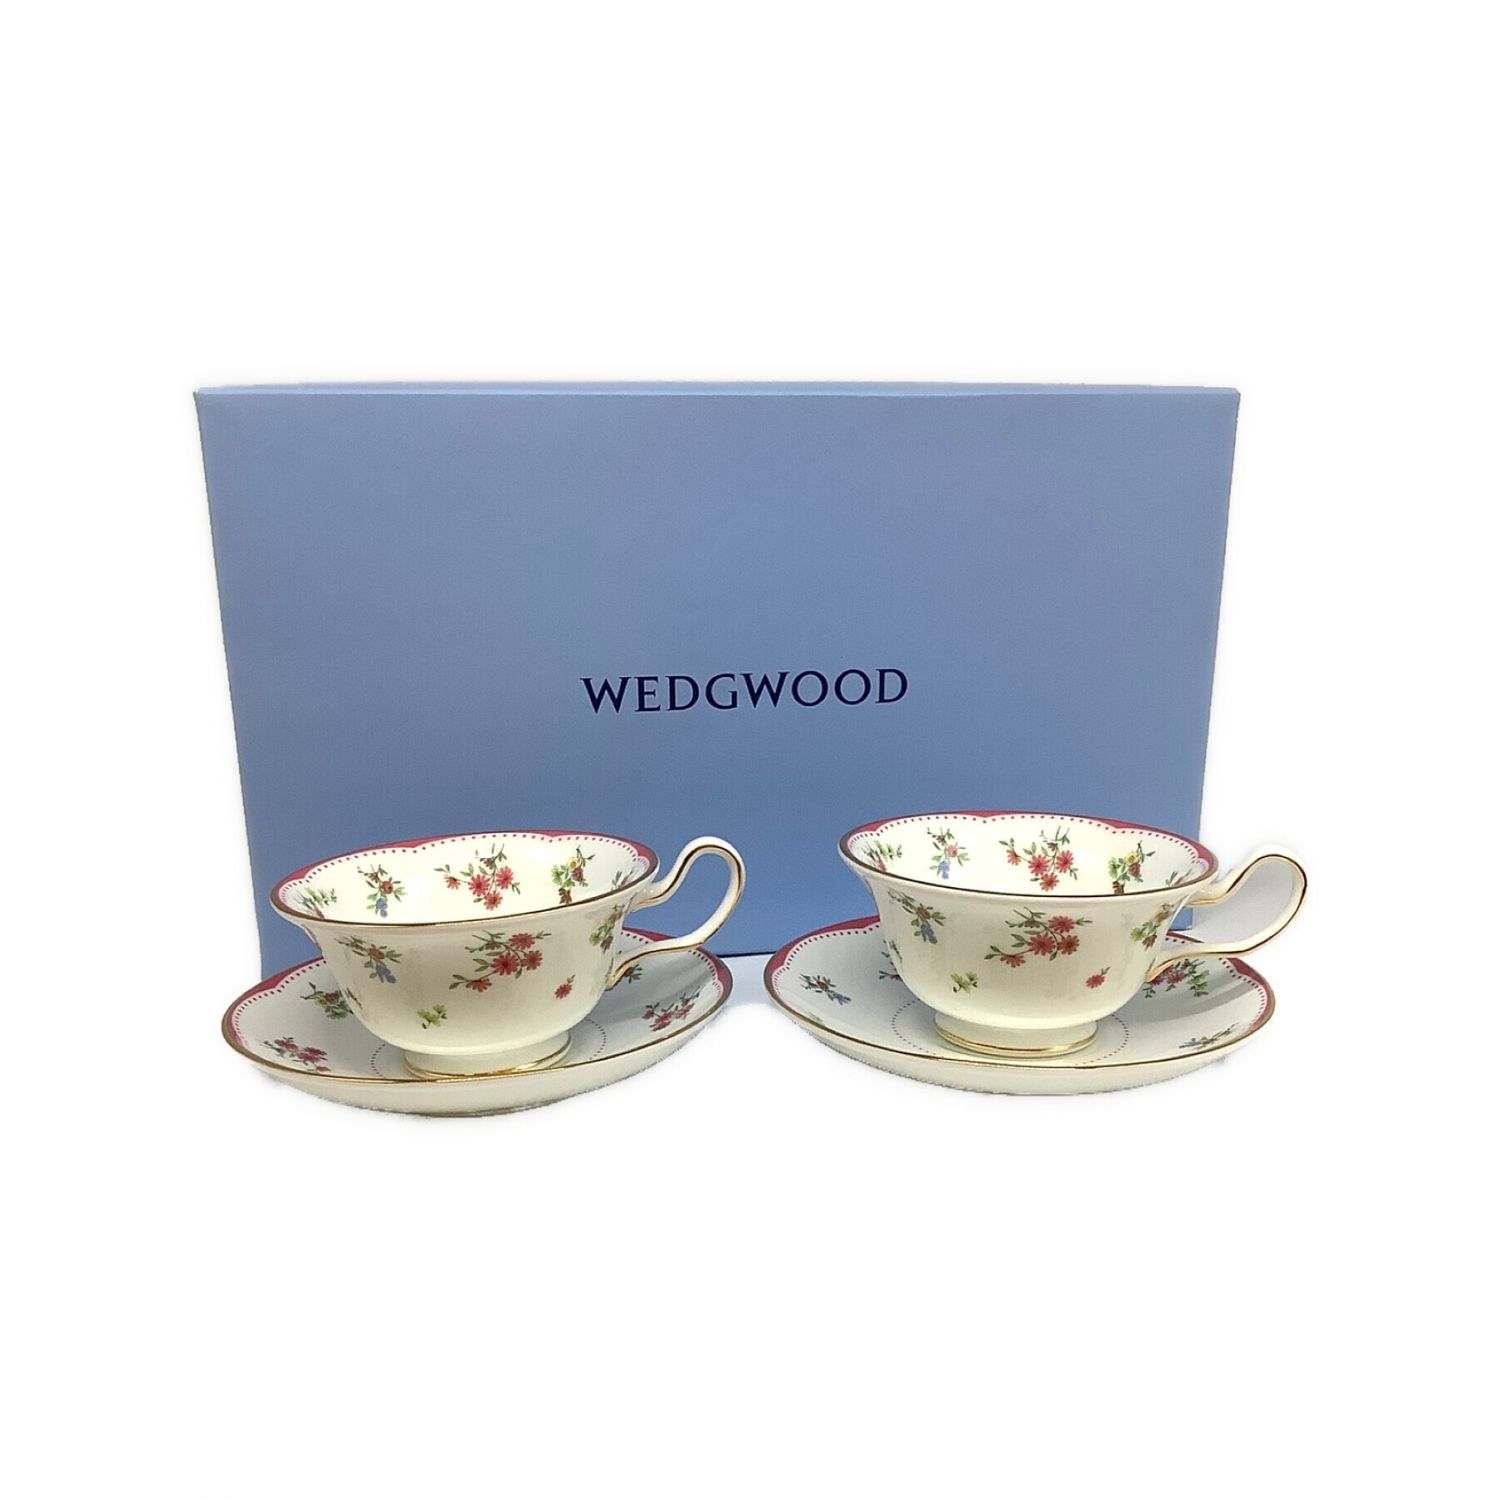 Wedgwood (ウェッジウッド) ティーカップ&ソーサー ピオニー フロー 